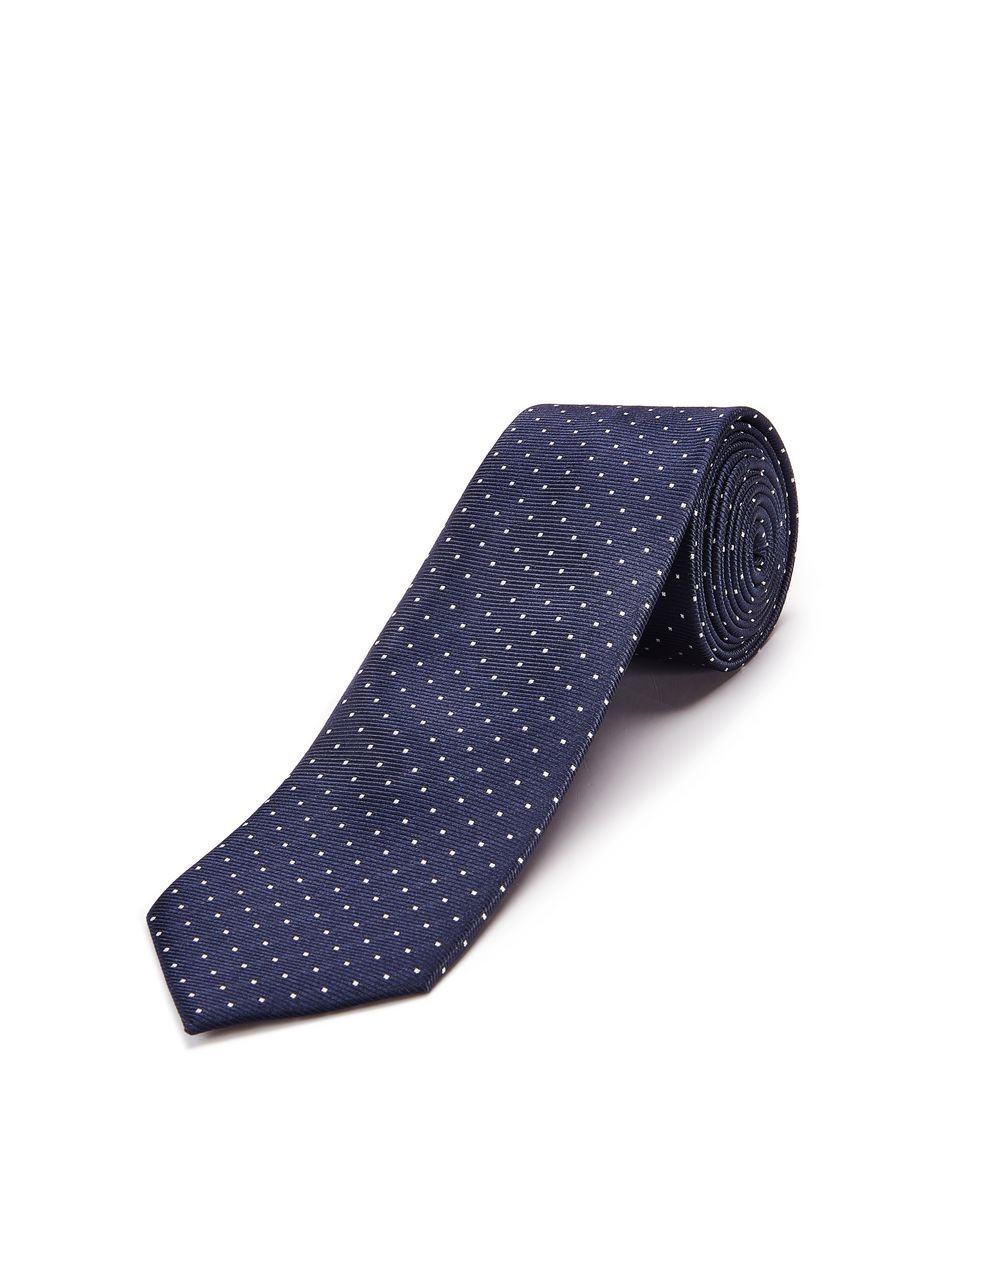 Lanvin Paris Cravatta Blu A Pois RMAC 1309T7 A1710 - Nuova Collezione Primavera Estate 2018